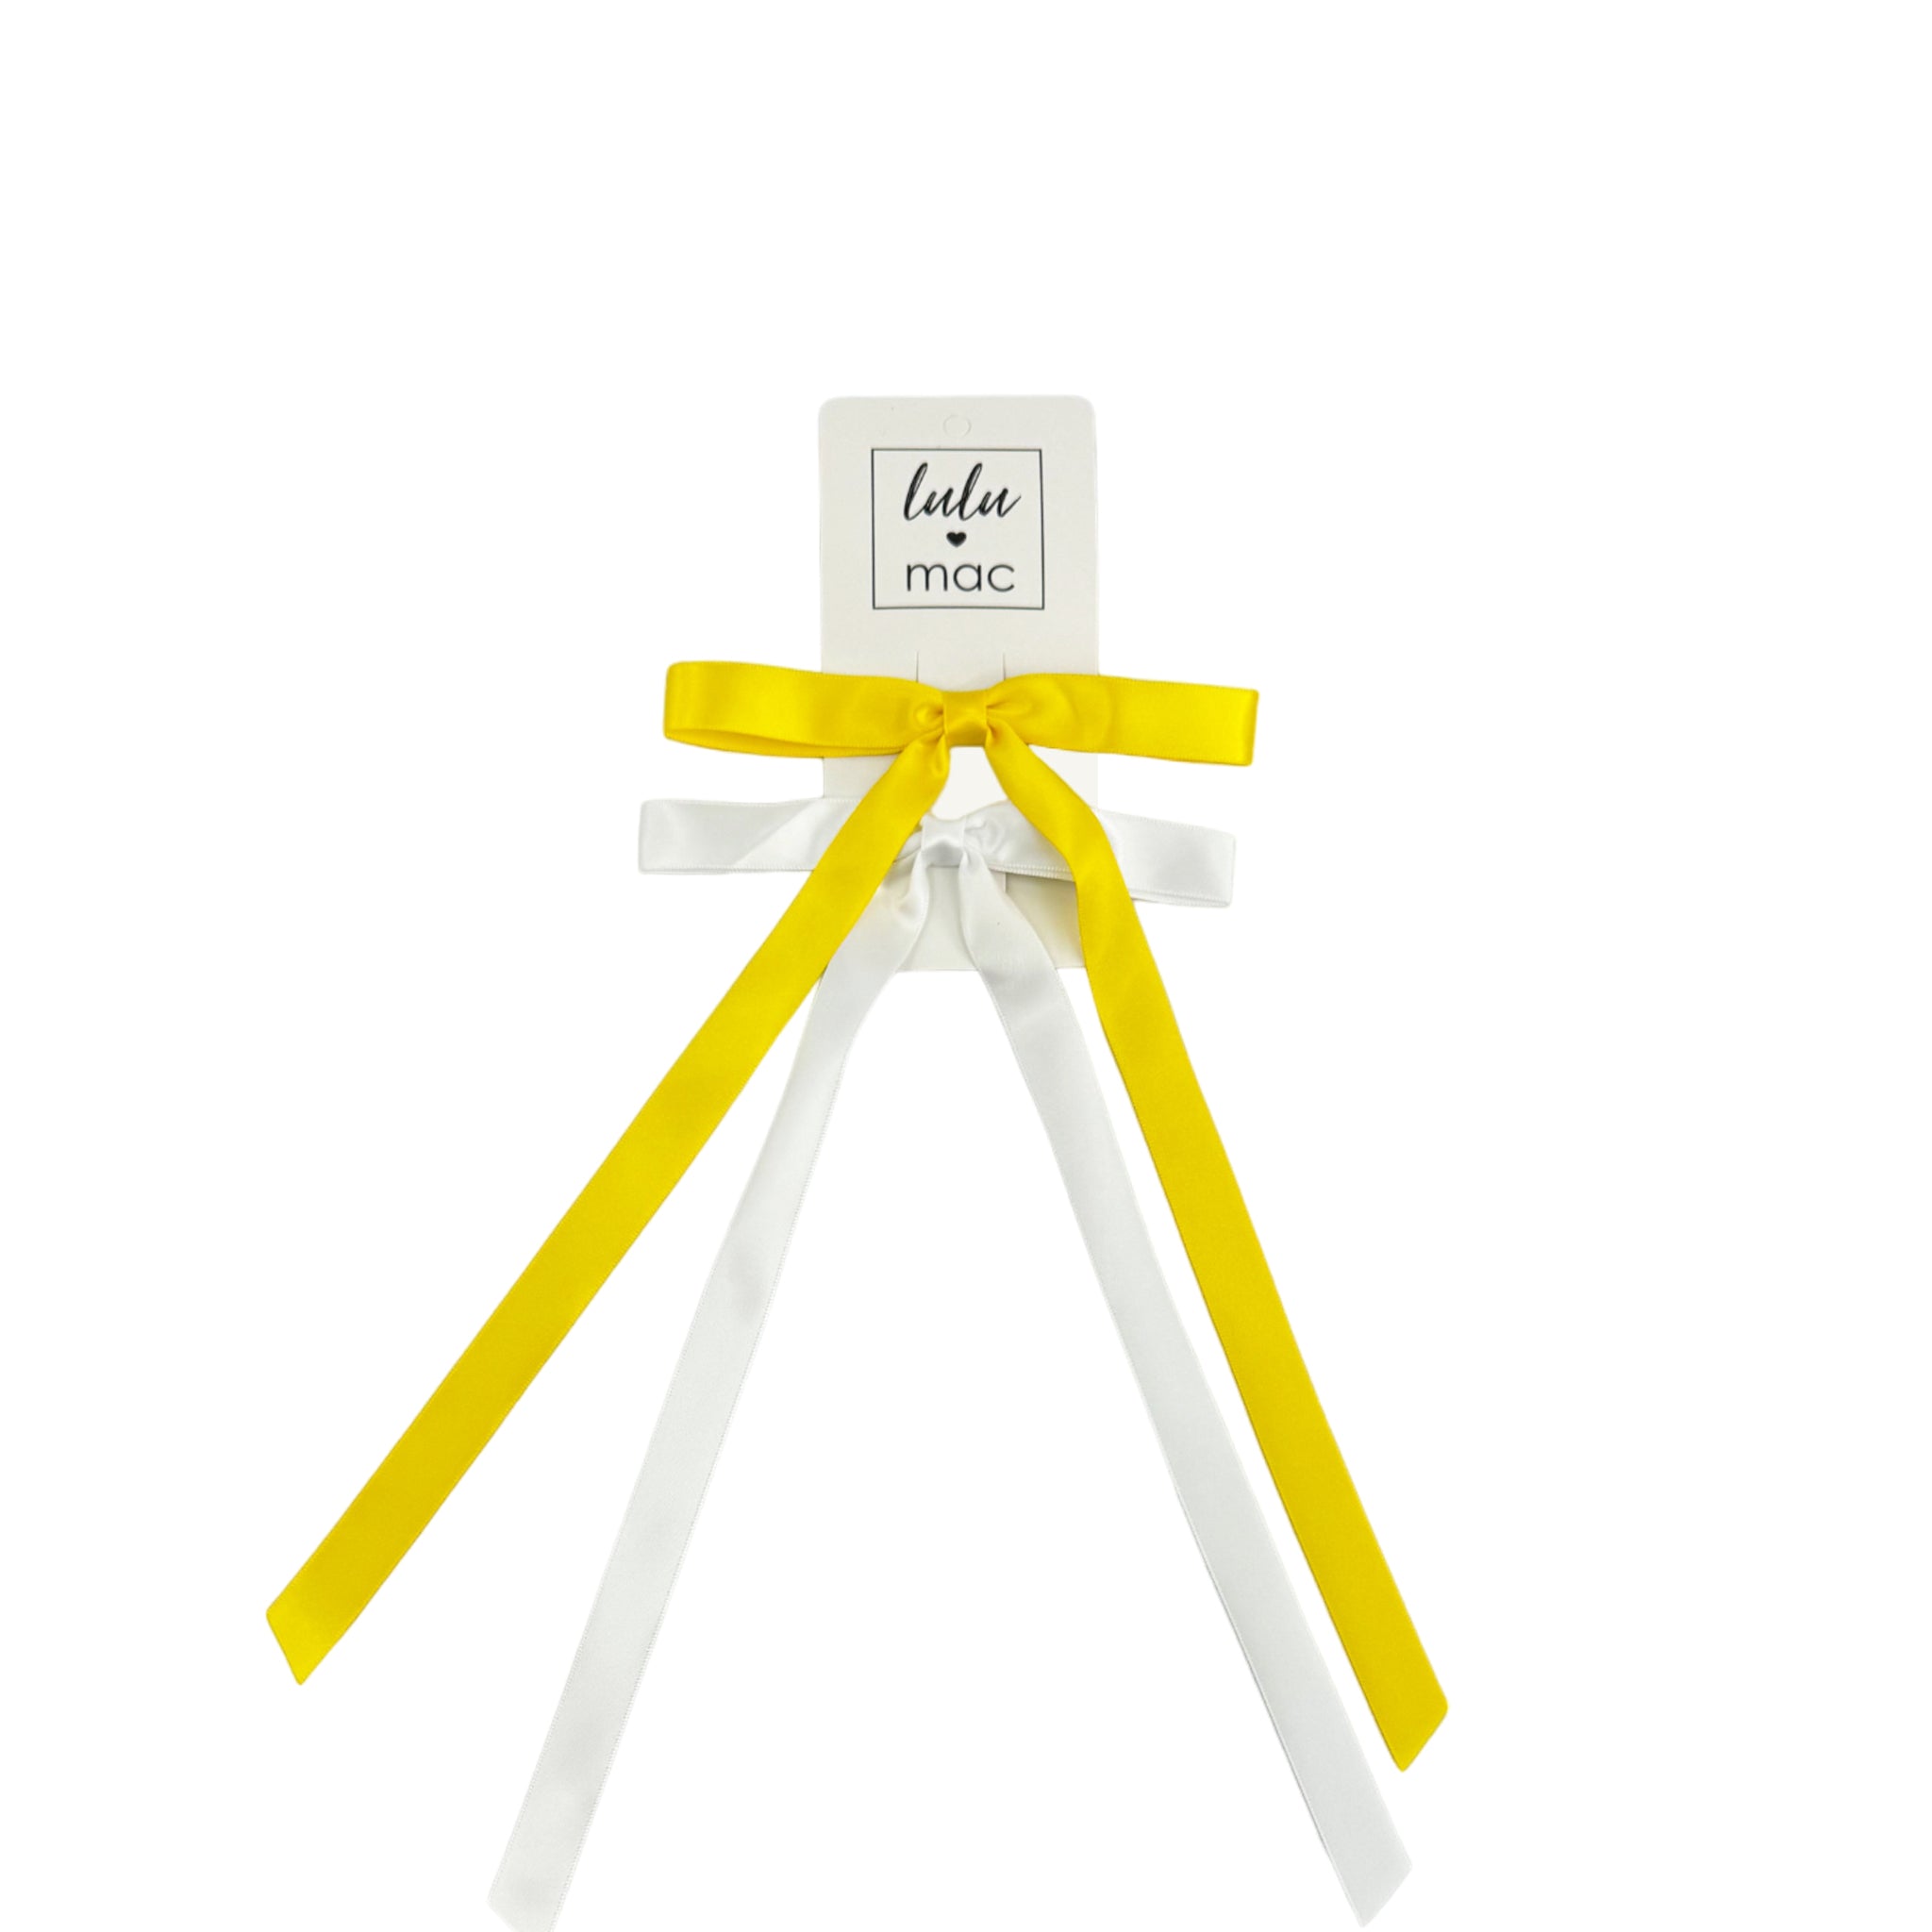 DDM-7656 Satin Mini Double Bow Yellow/White